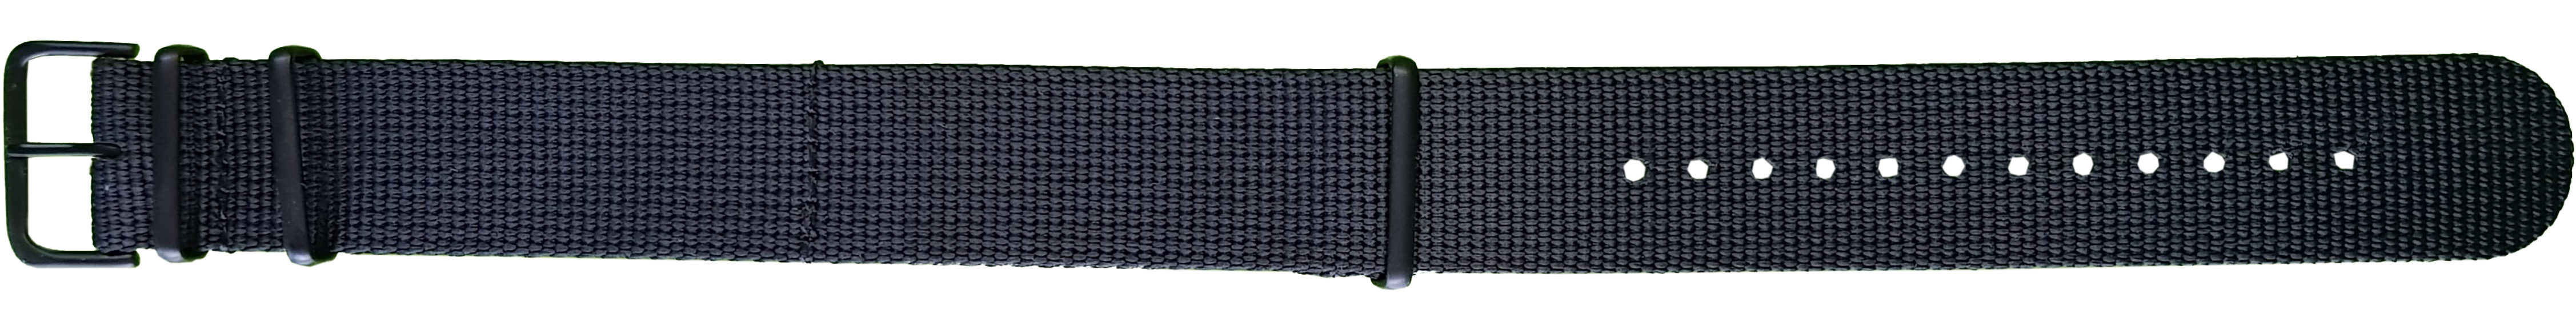 108233 traser® 22mm Textile Strap Black/PVD